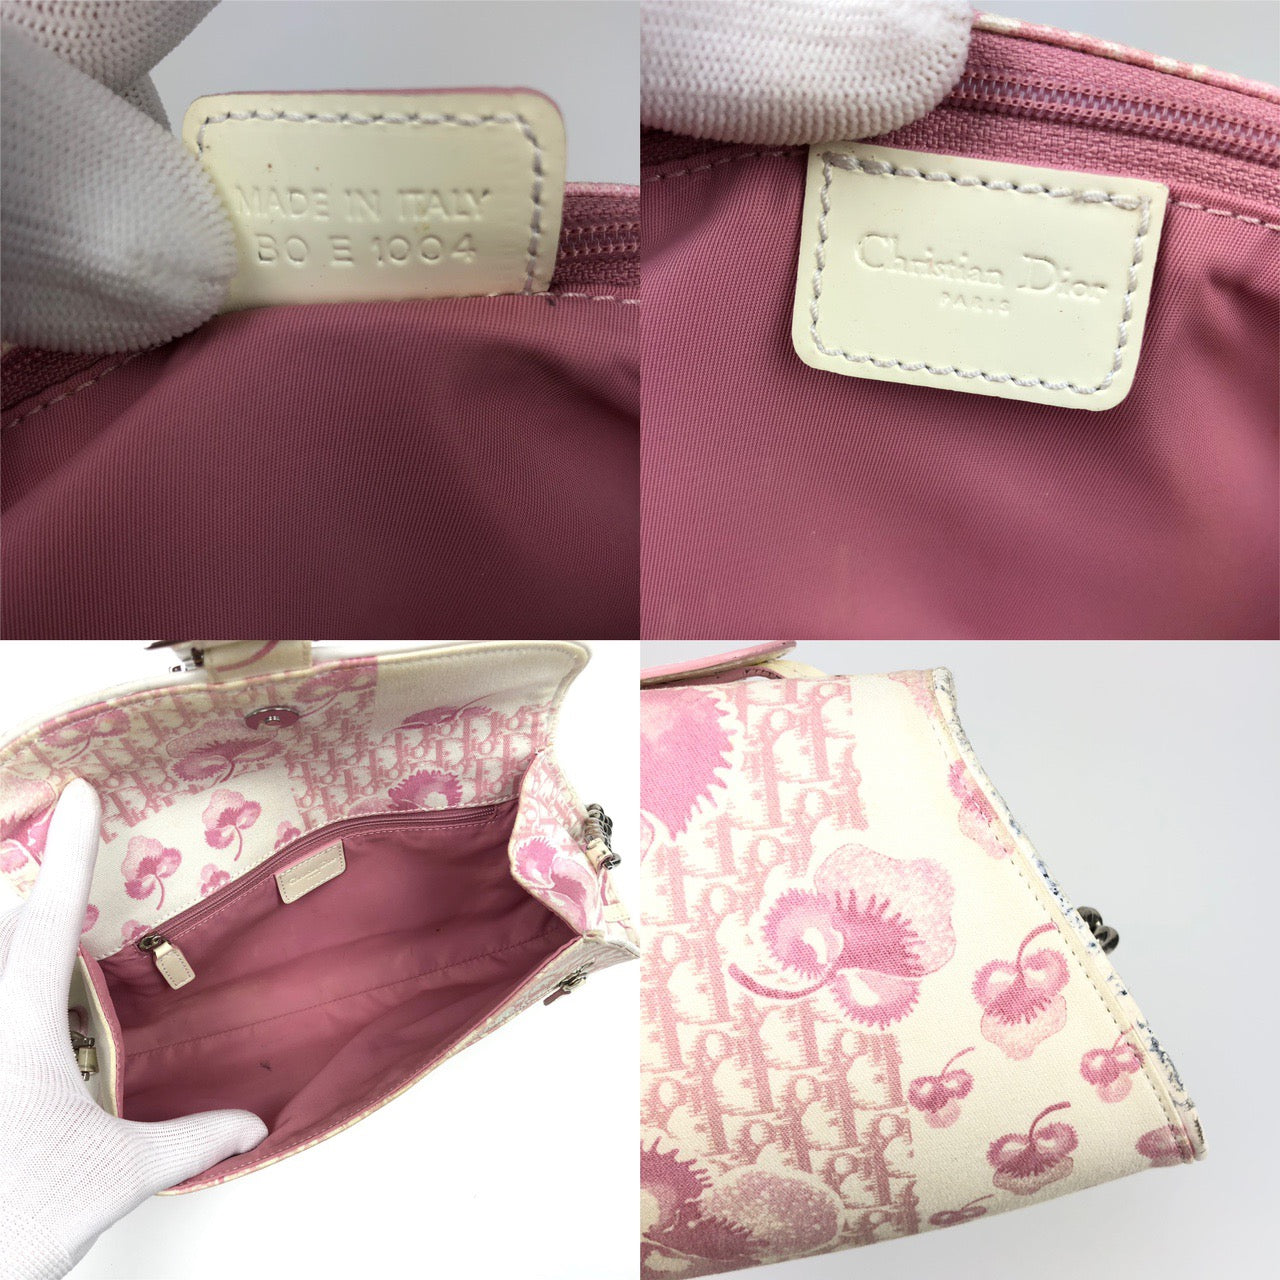 Christian Dior Cherry Blossom Monogram Shoulder Bag